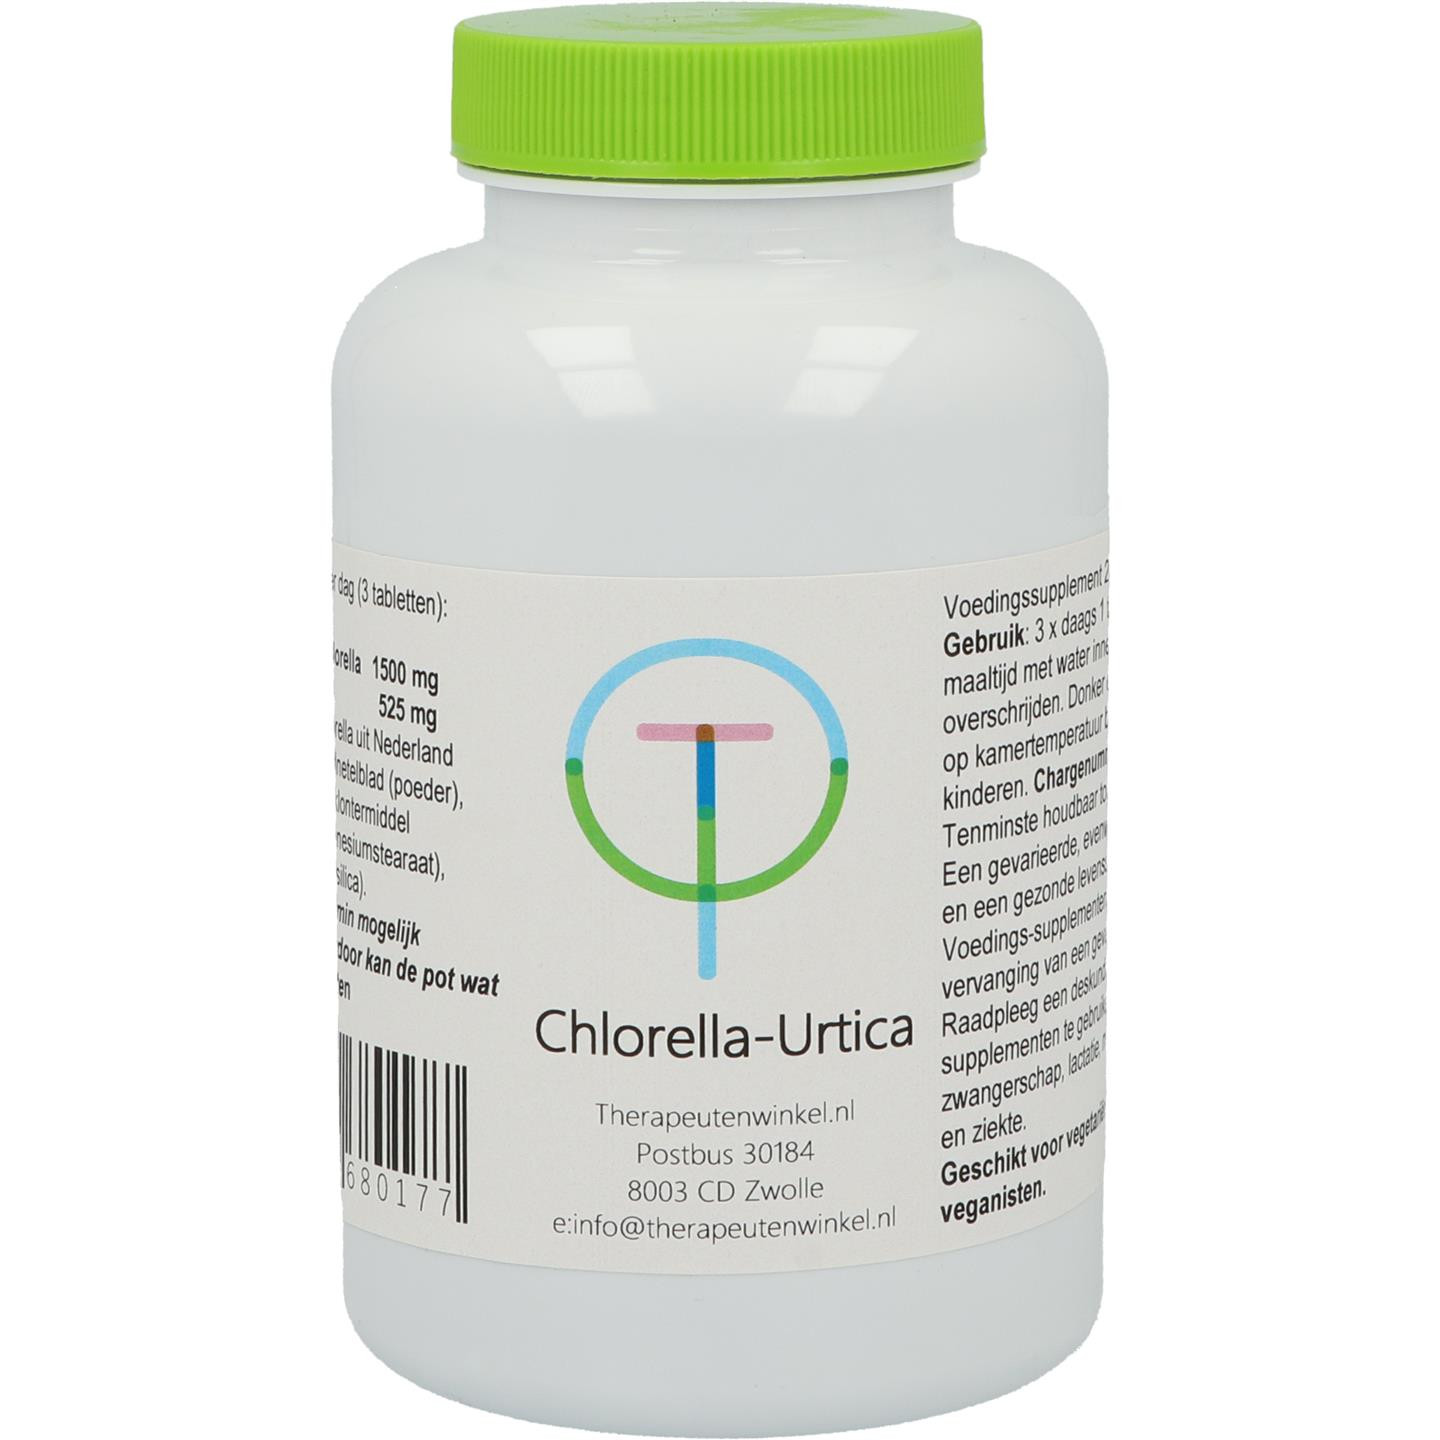 Chlorella-Urtica